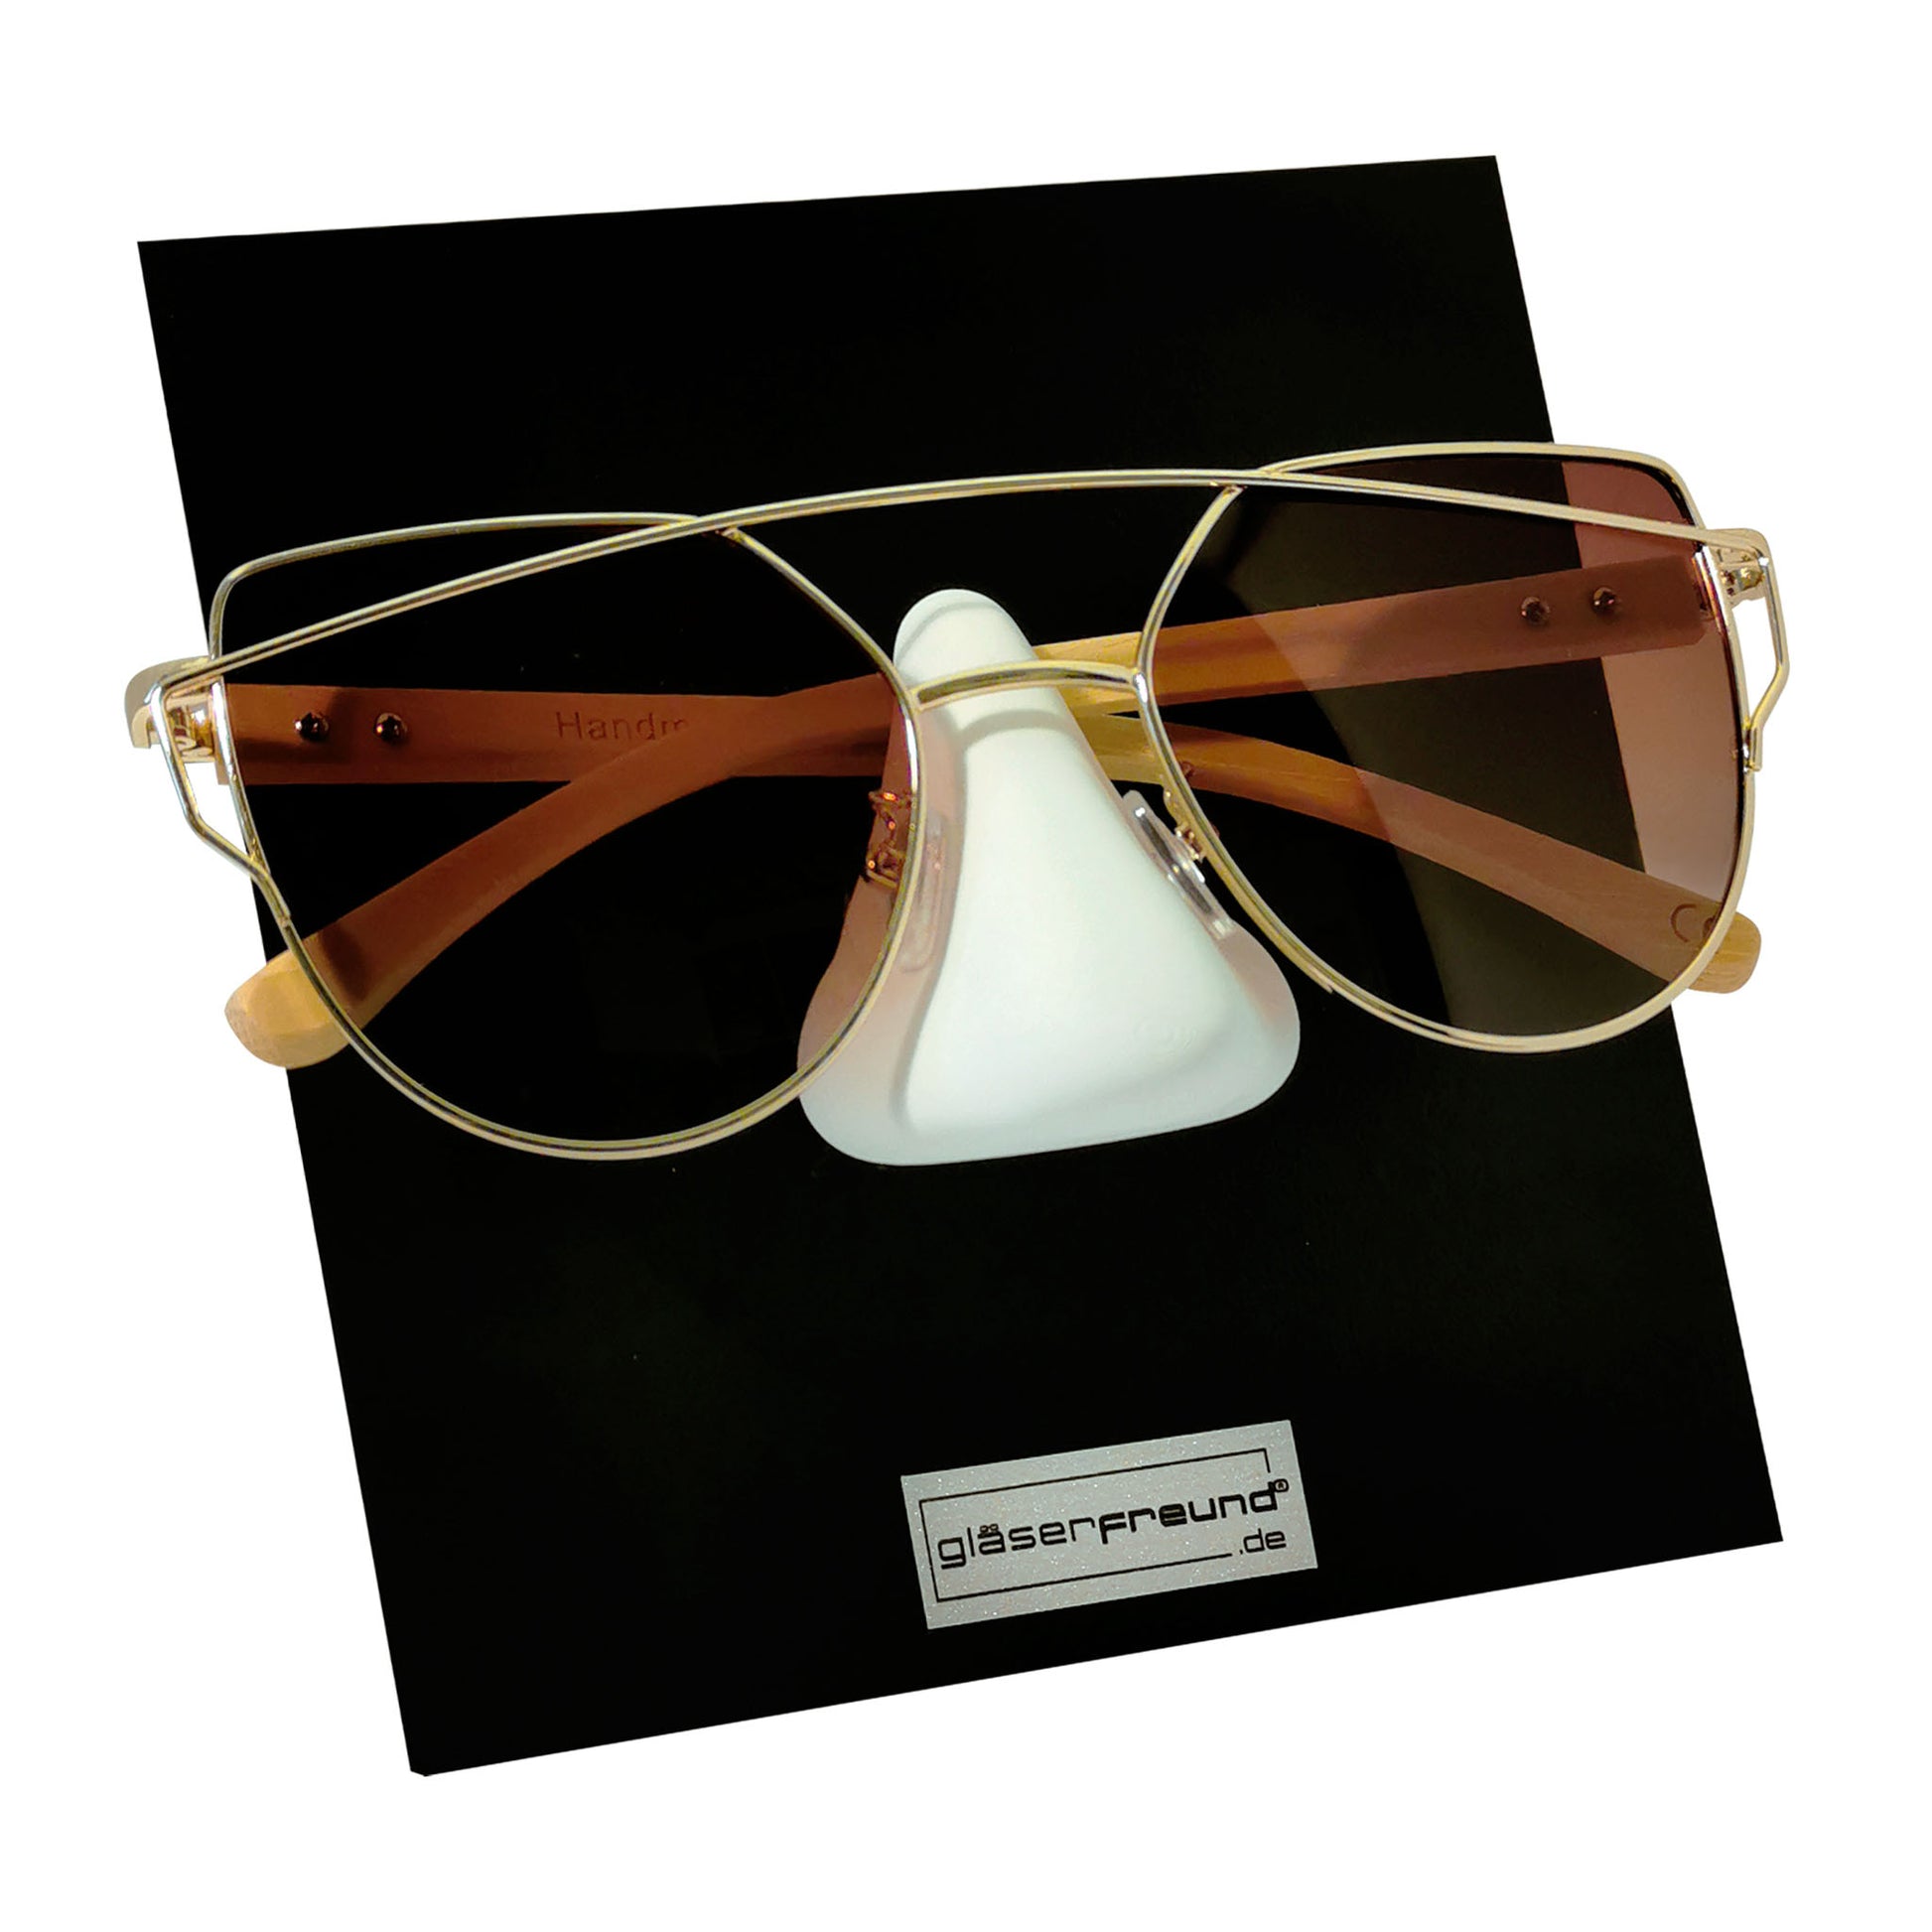 31 Brillenhalter-Ideen  brillen halter, brillenhalter, brille